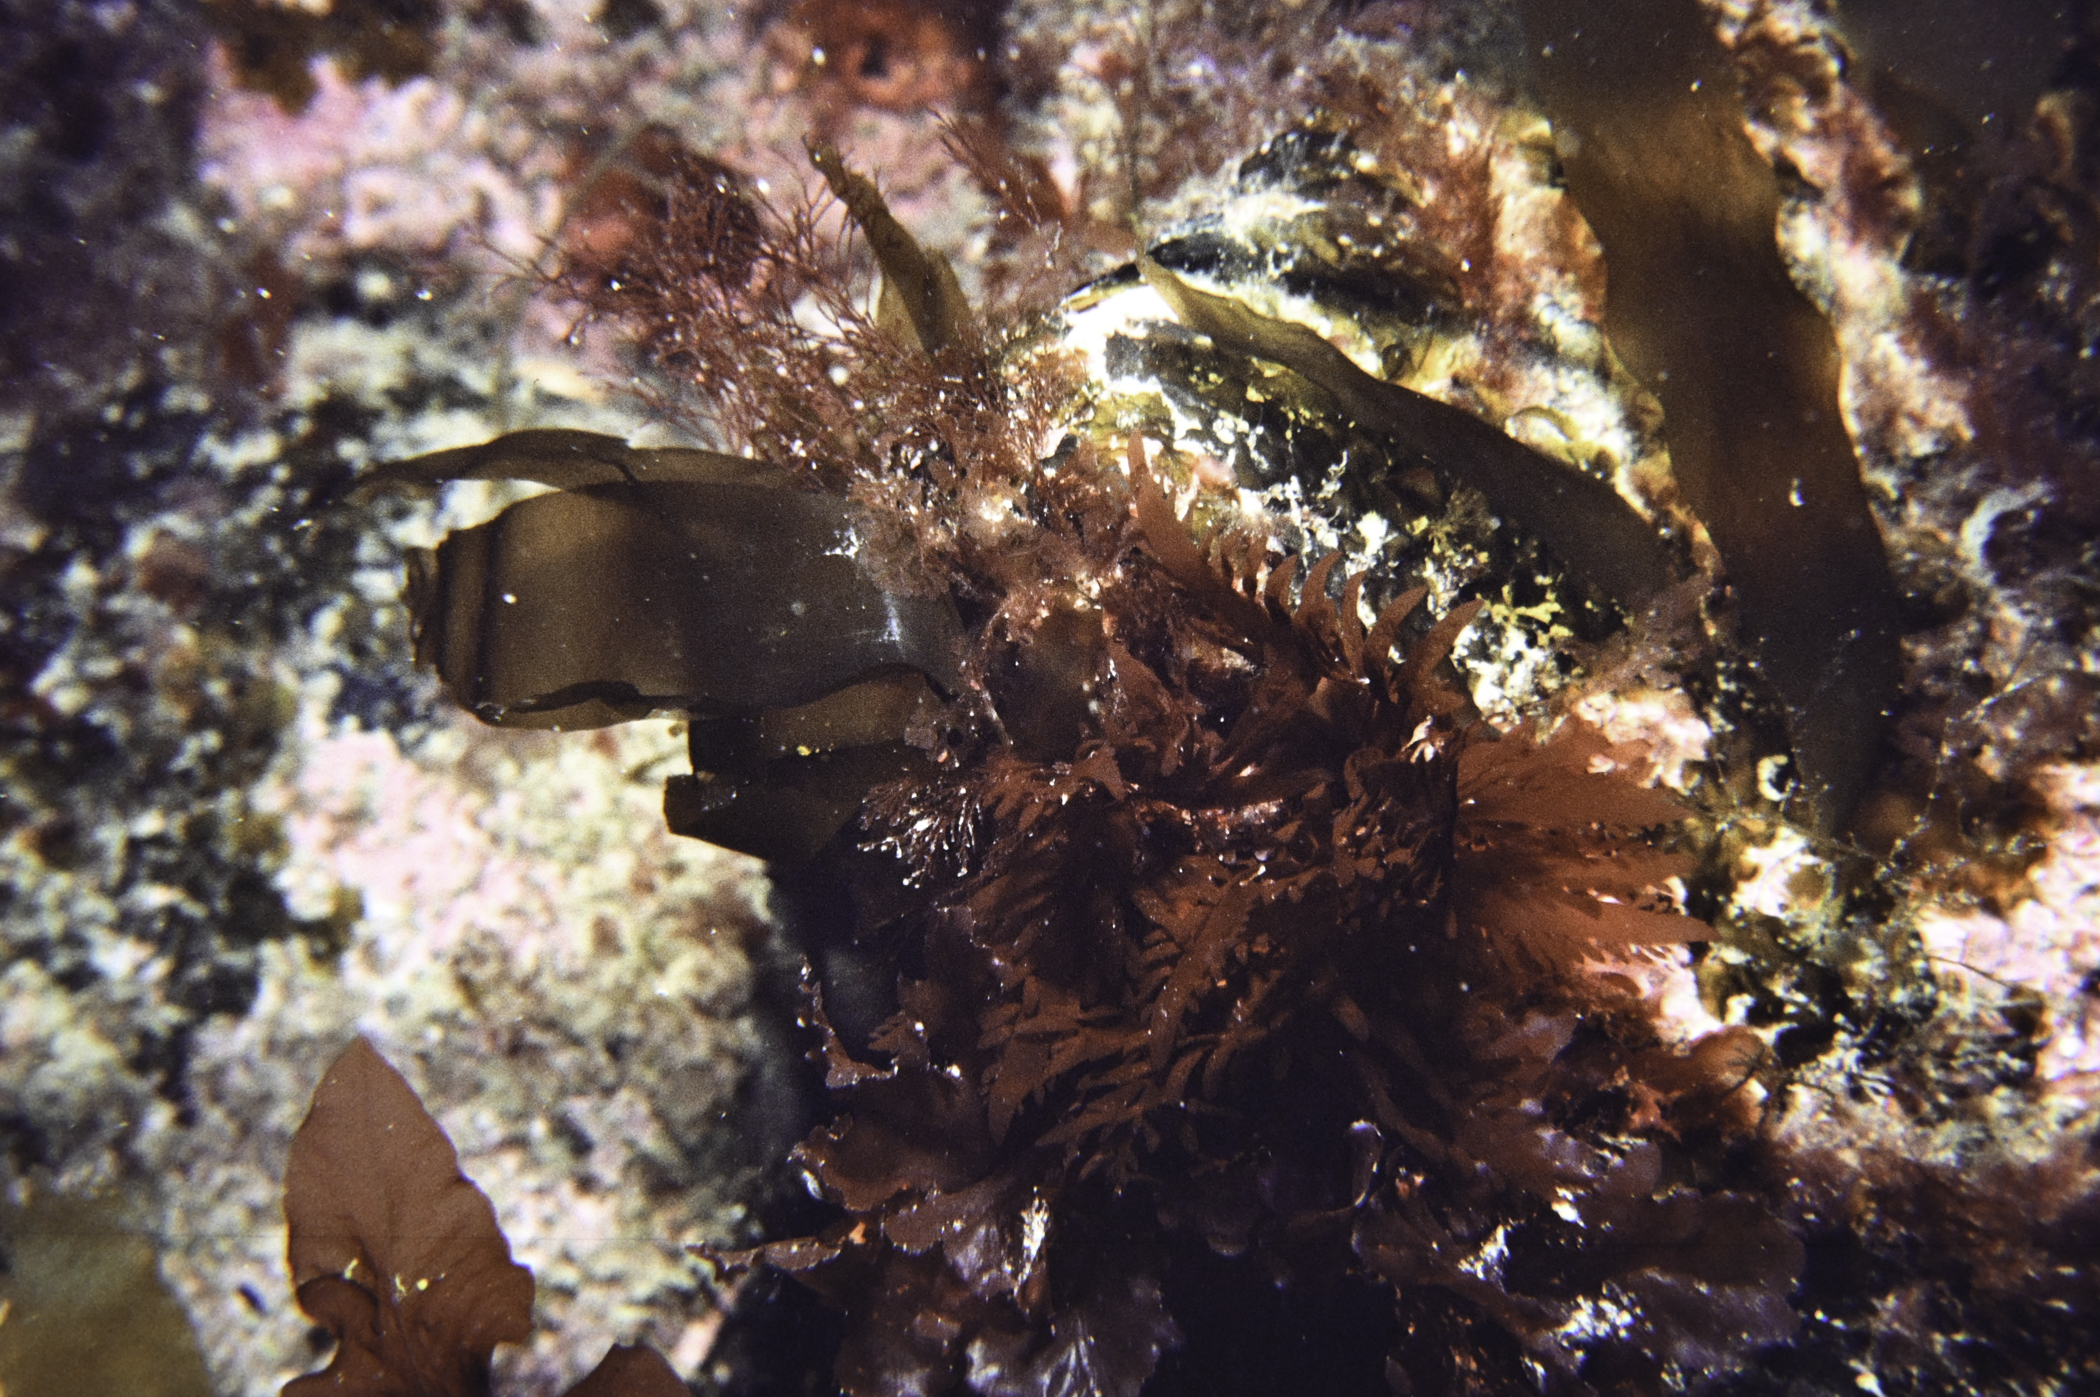 Calliblepharis ciliata. Site: White Cliffs, Church Bay, Rathlin Island. 